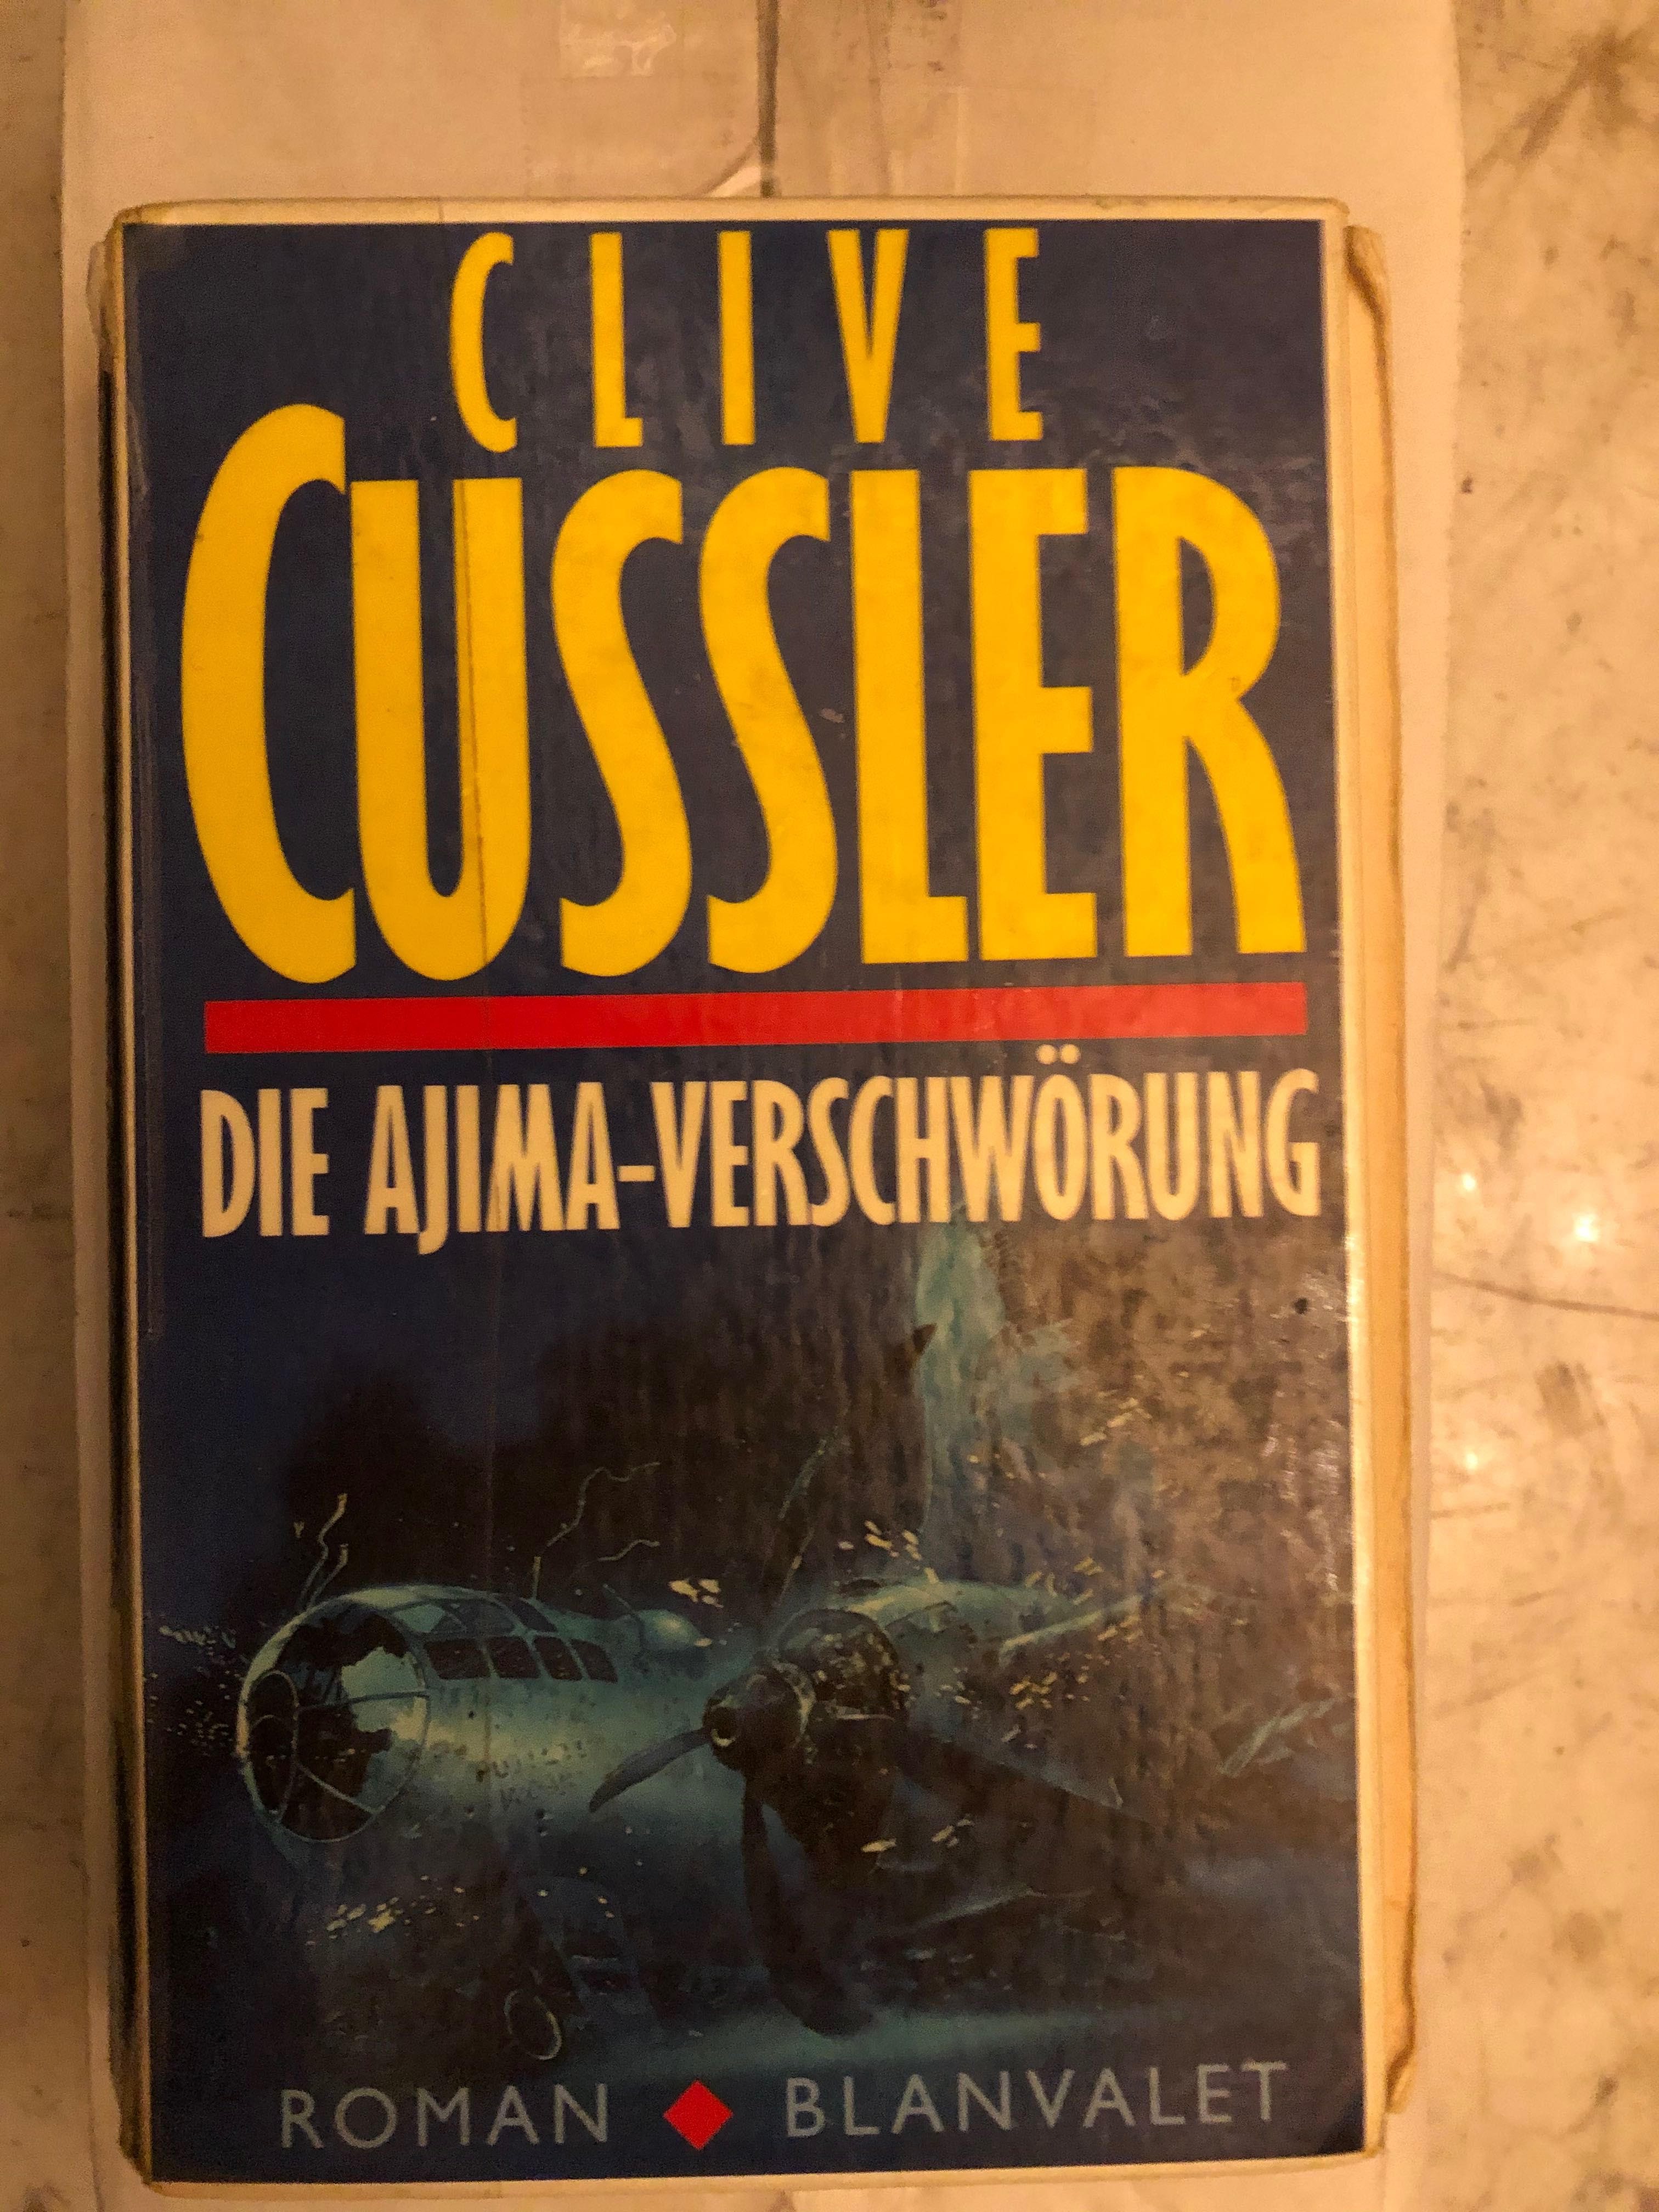 Roman De Aventura, carte in limba germana a celebrului Clive Cussler